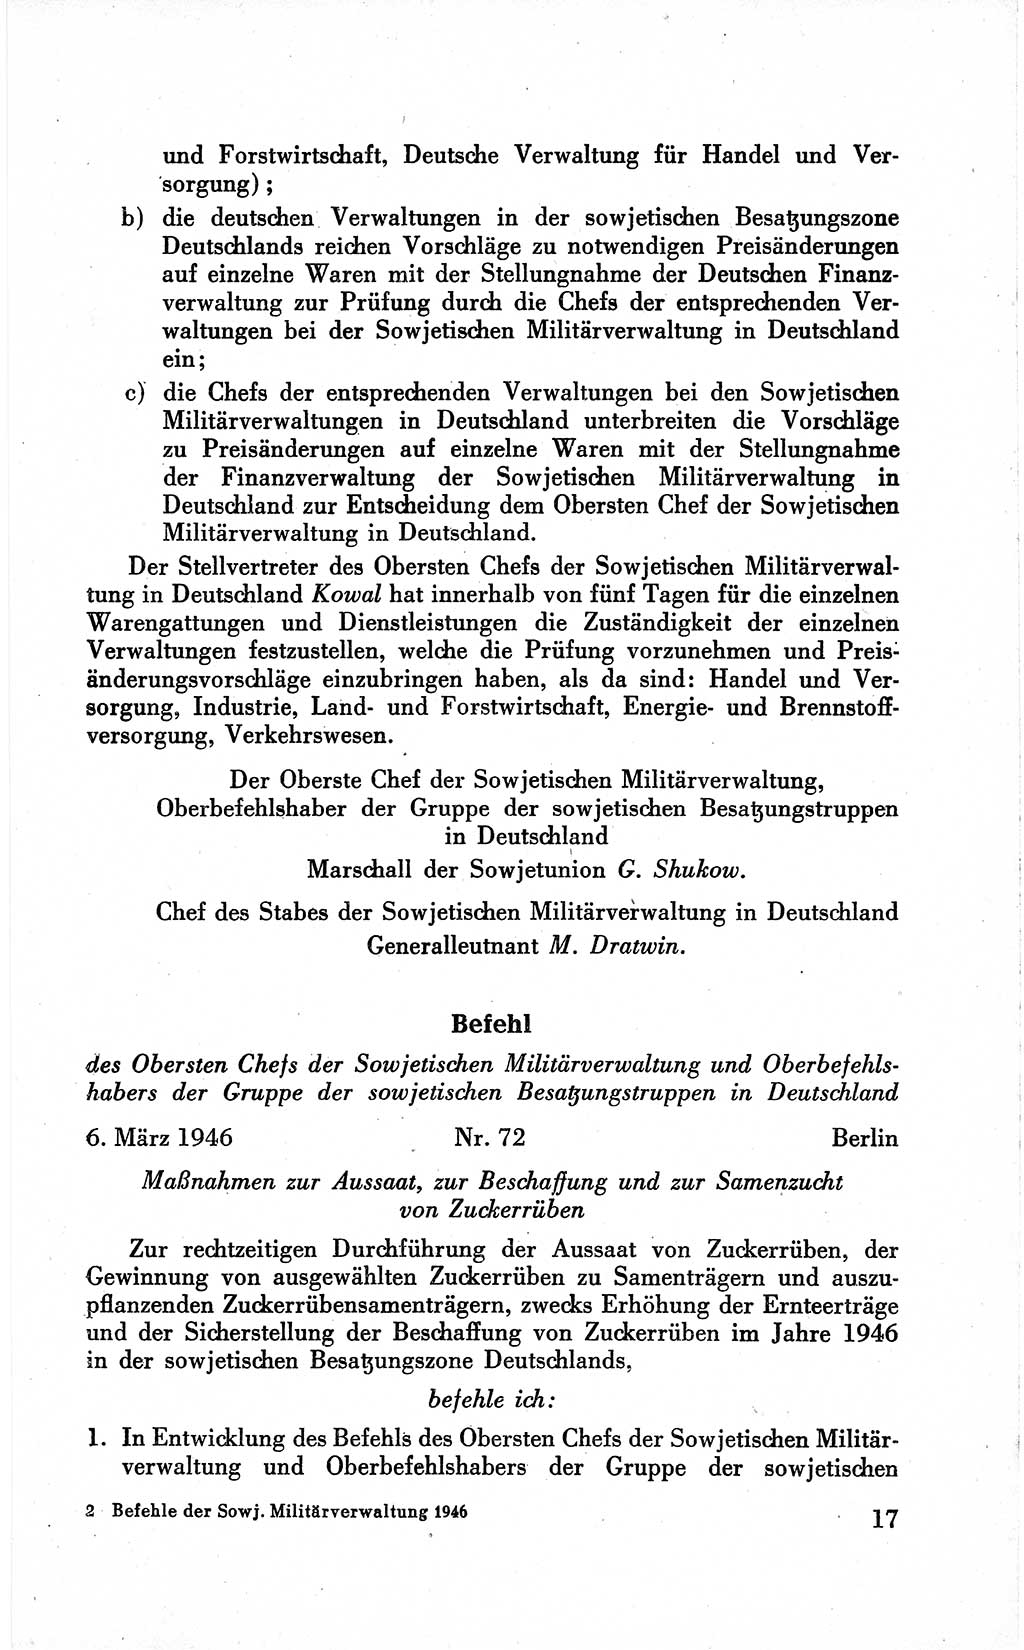 Befehle des Obersten Chefs der Sowjetischen Miltärverwaltung (SMV) in Deutschland - Aus dem Stab der Sowjetischen Militärverwaltung in Deutschland 1946 (Bef. SMV Dtl. 1946, S. 17)